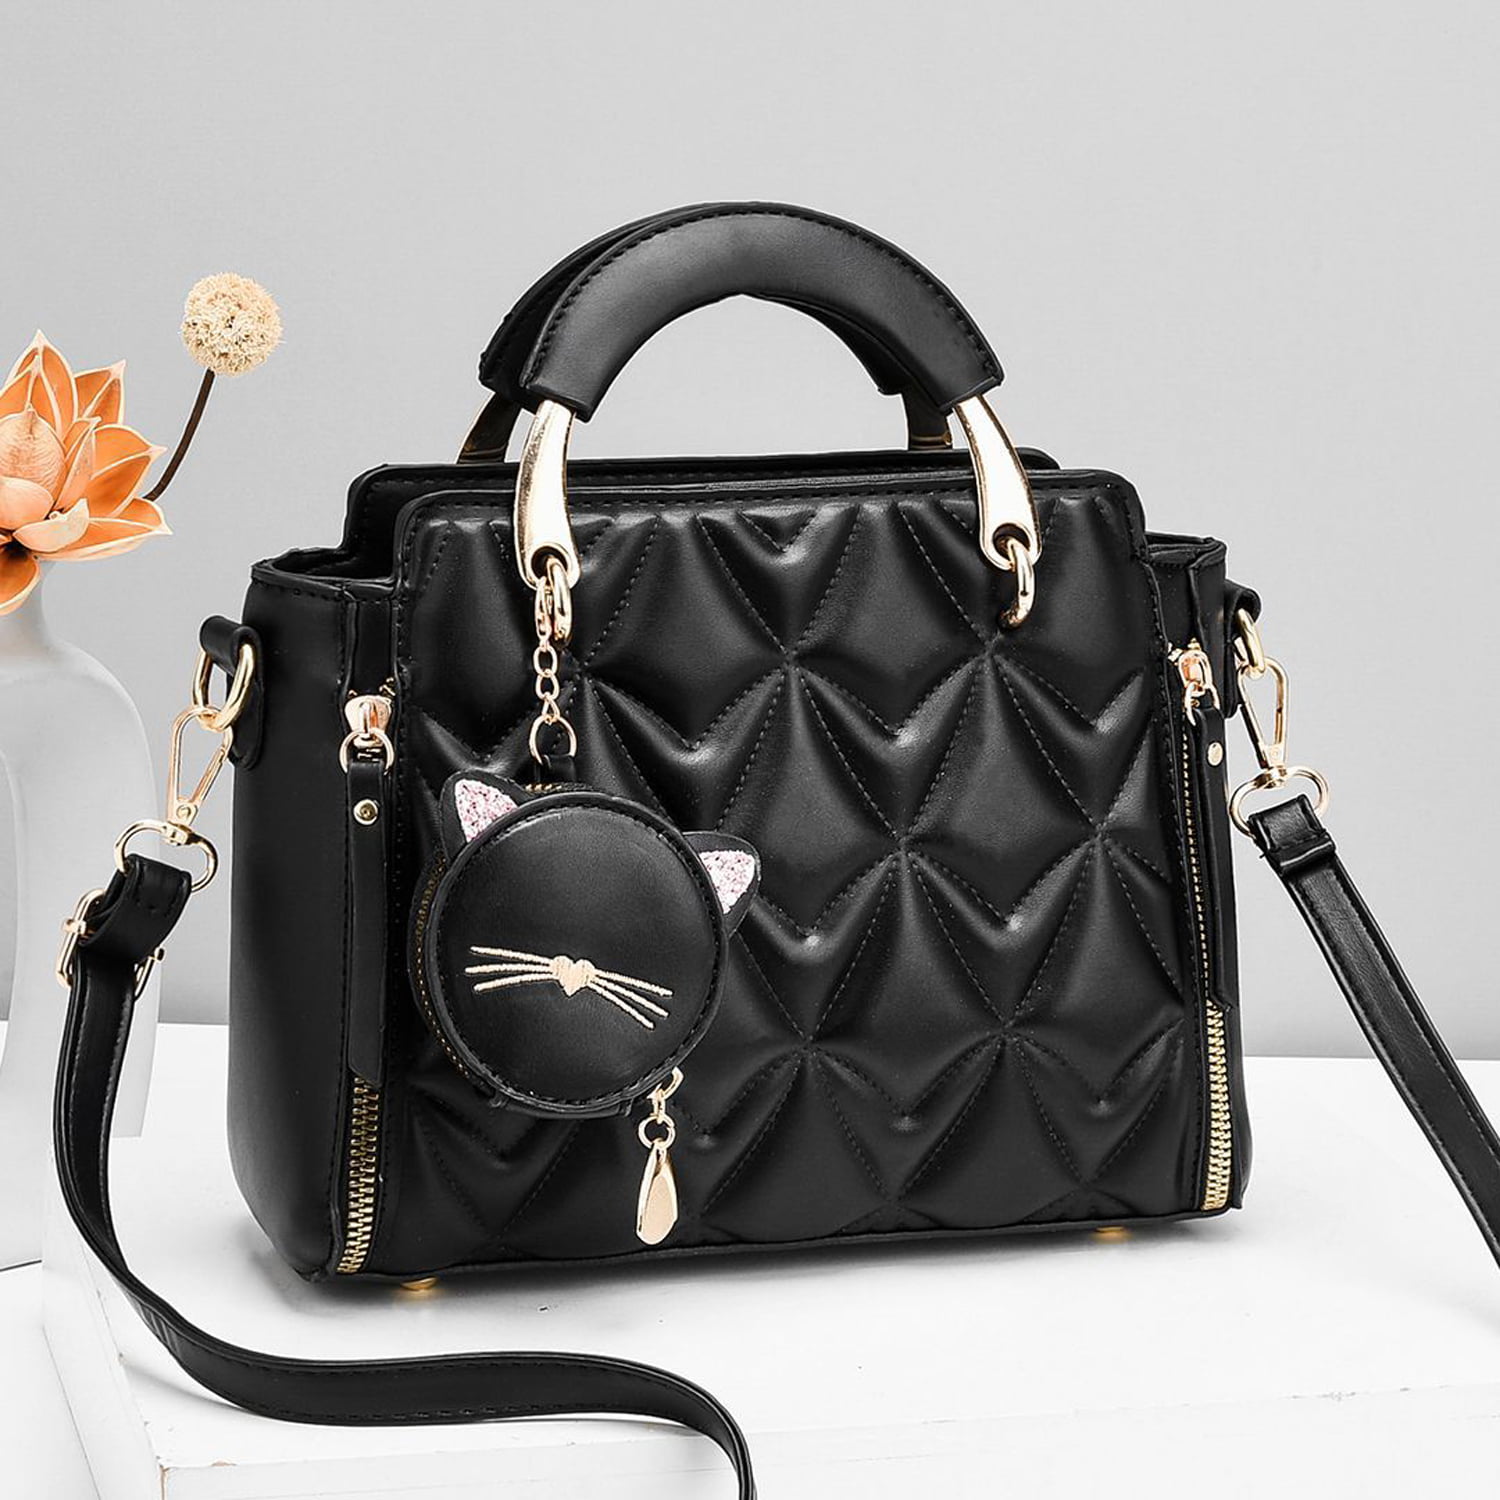 BeCool Women's Adult Top Handle Satchel Handbag with Lock Black - Walmart .com